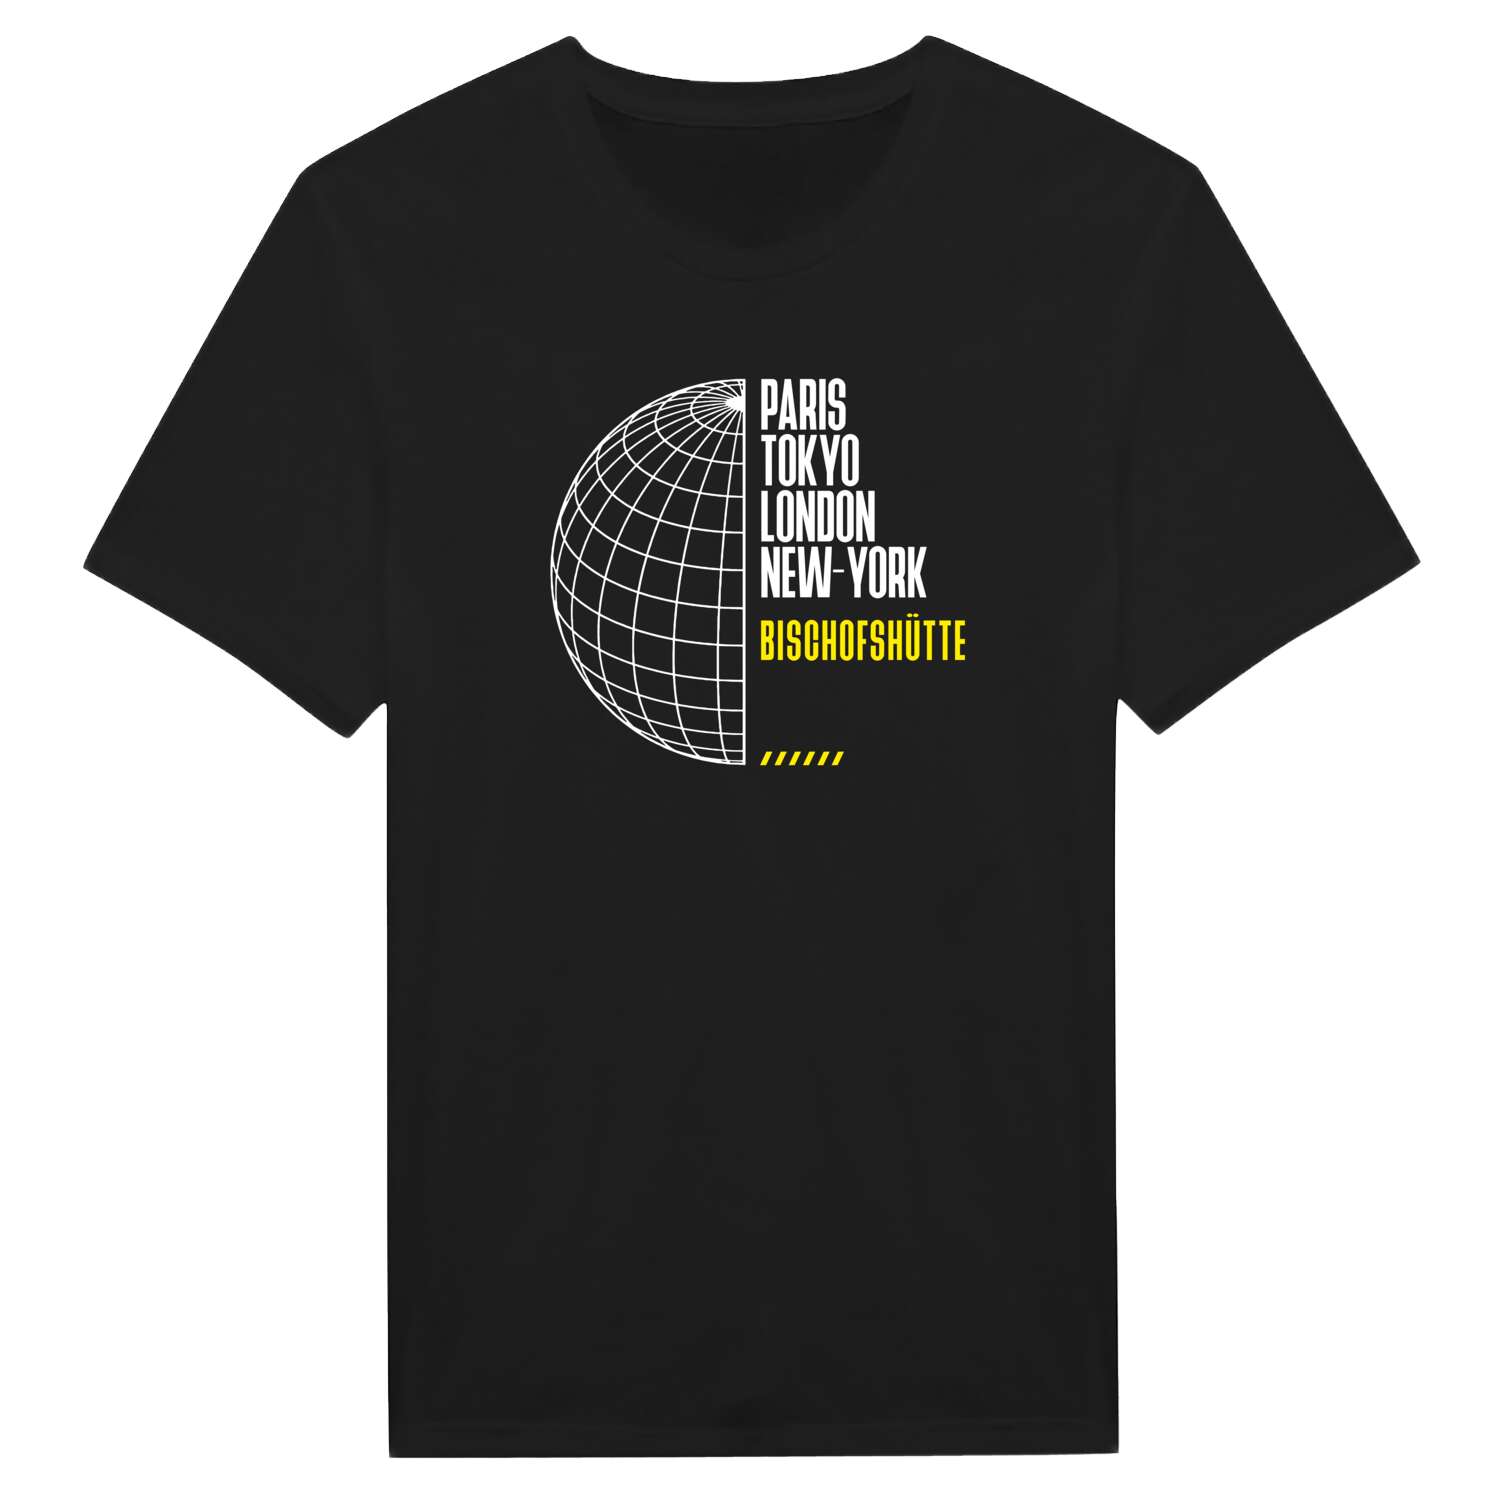 Bischofshütte T-Shirt »Paris Tokyo London«